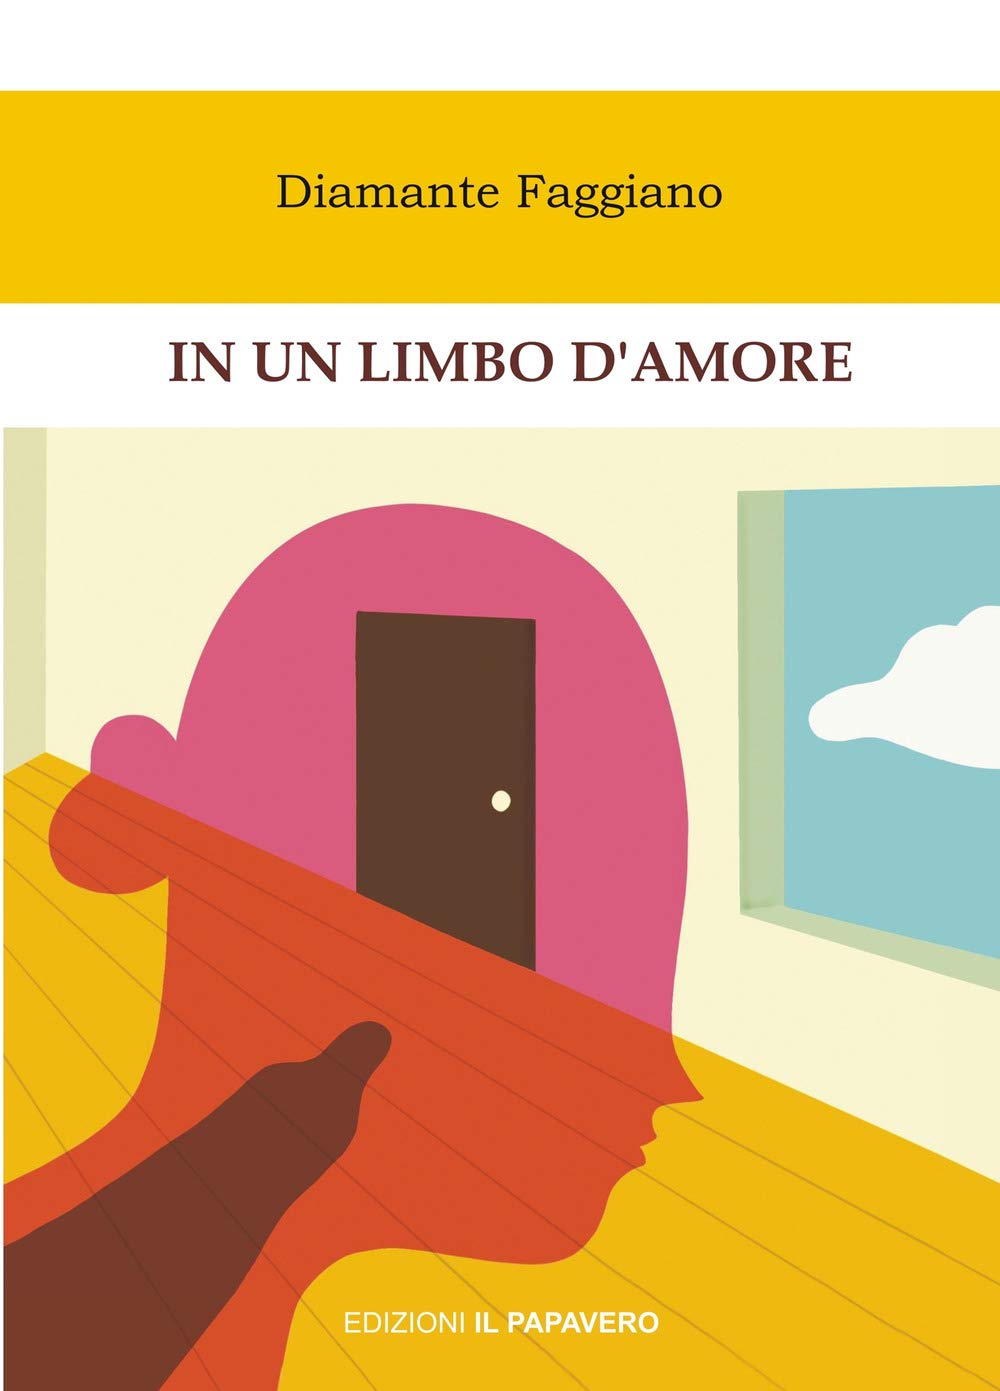 Diamante Faggiano presenta il romanzo “In un limbo d’amore”